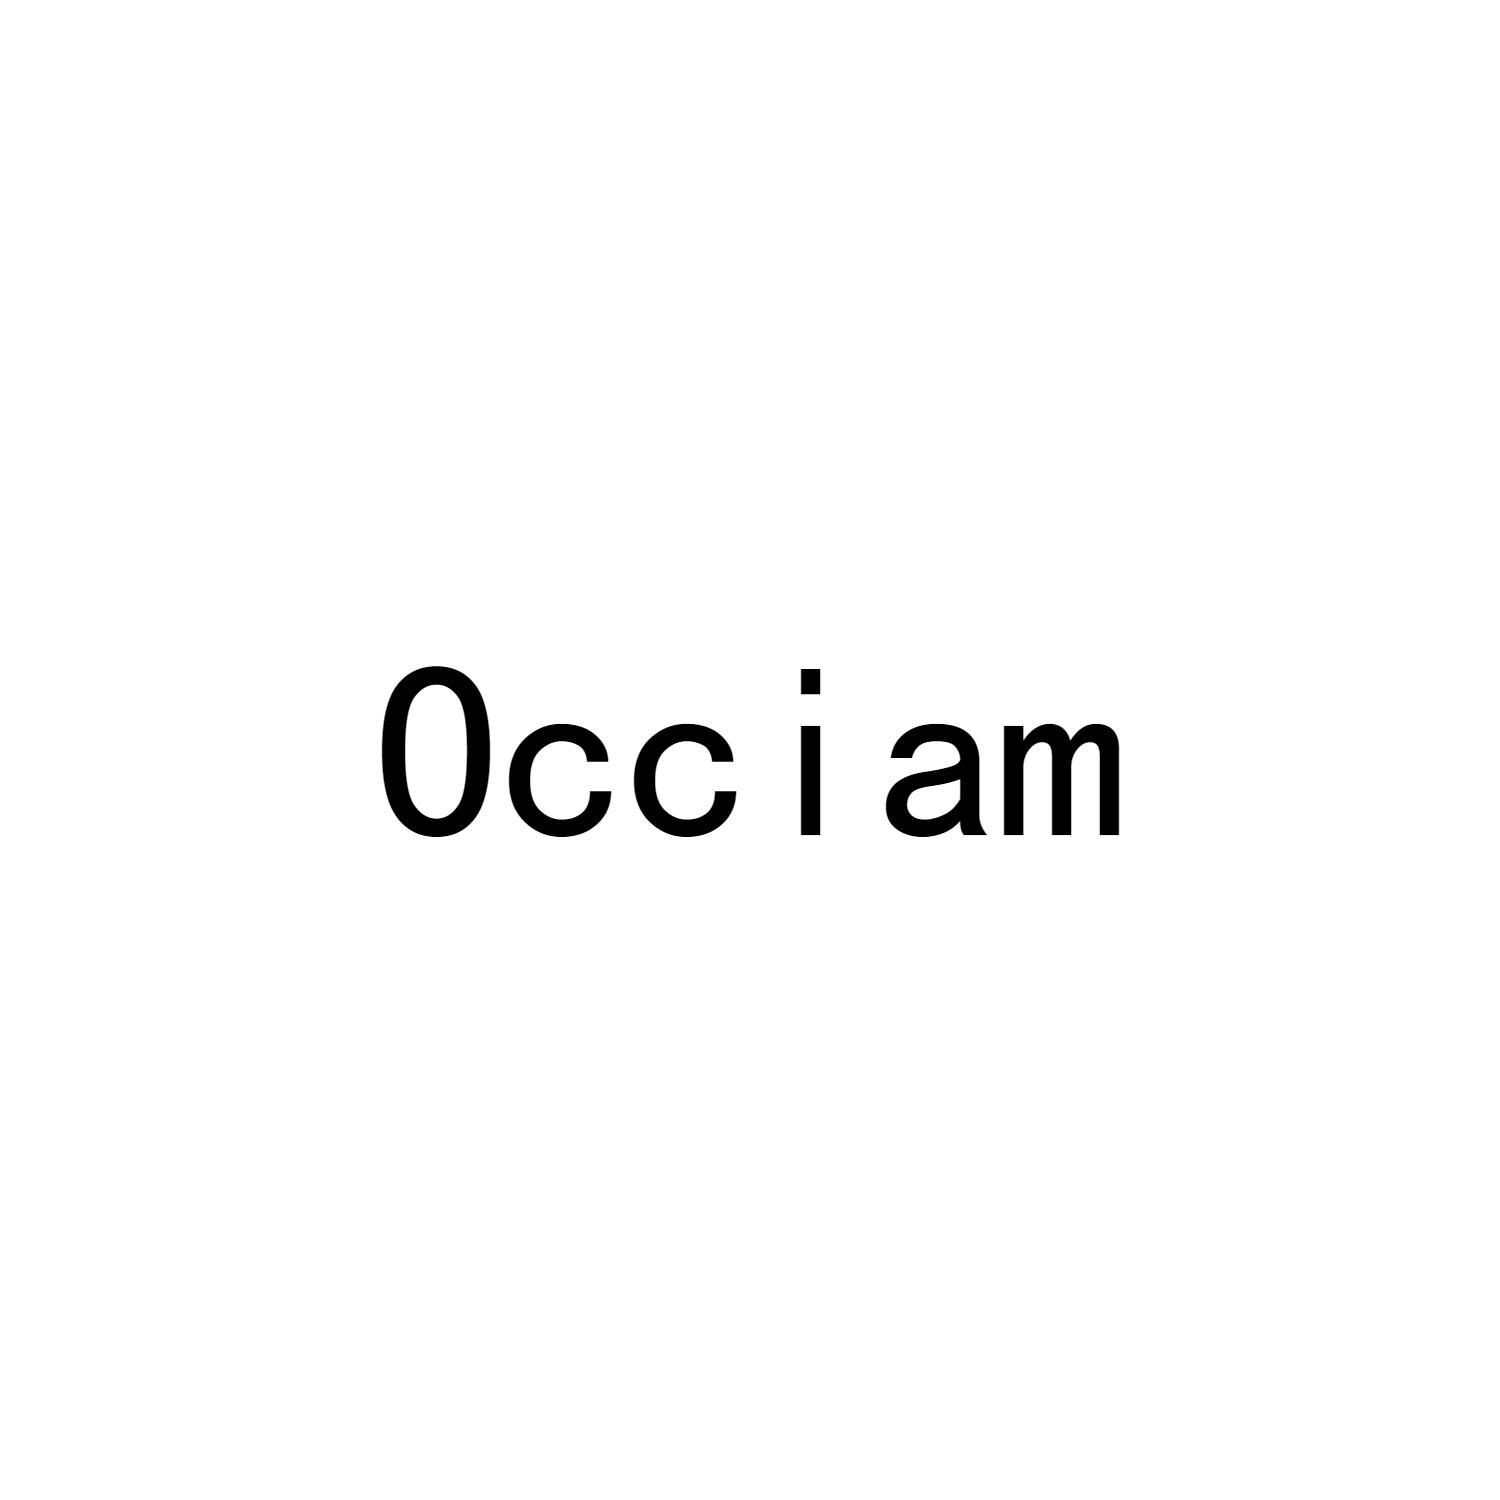 OCCIAM